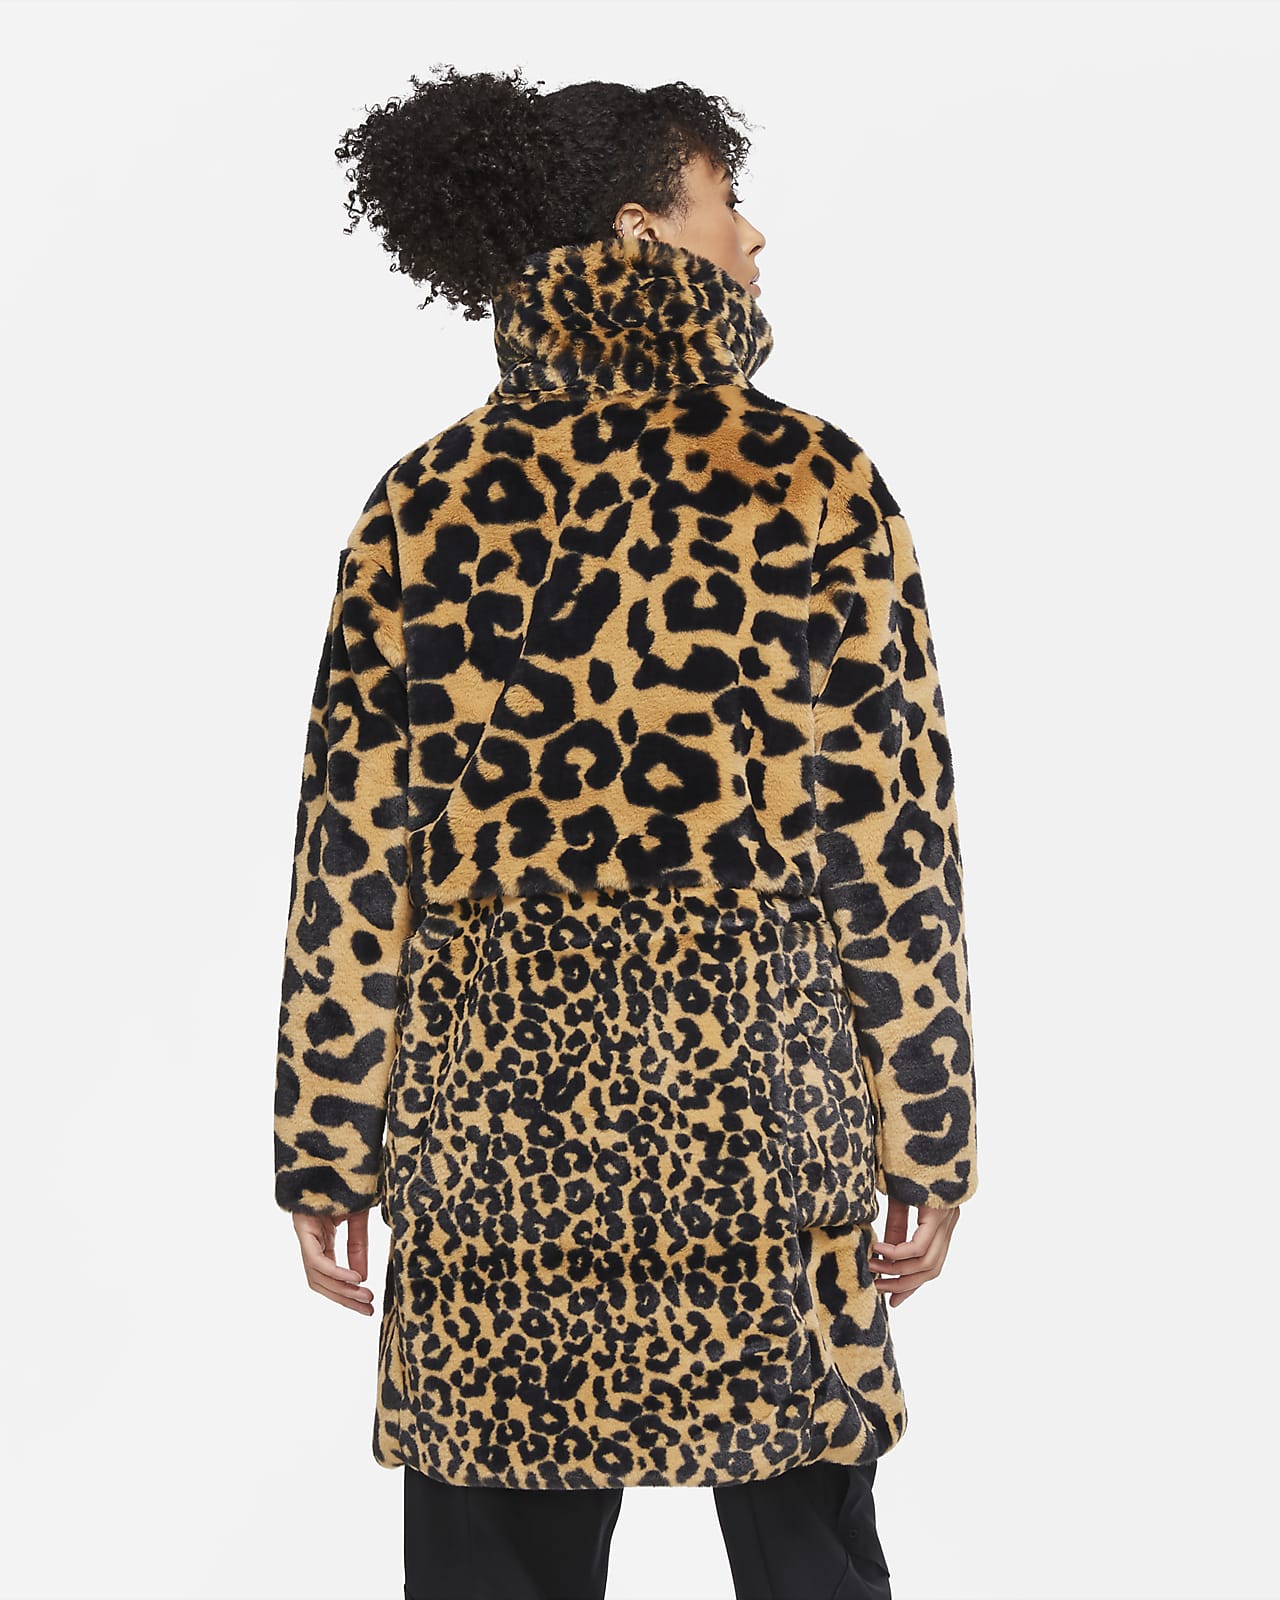 leopard nike jacket